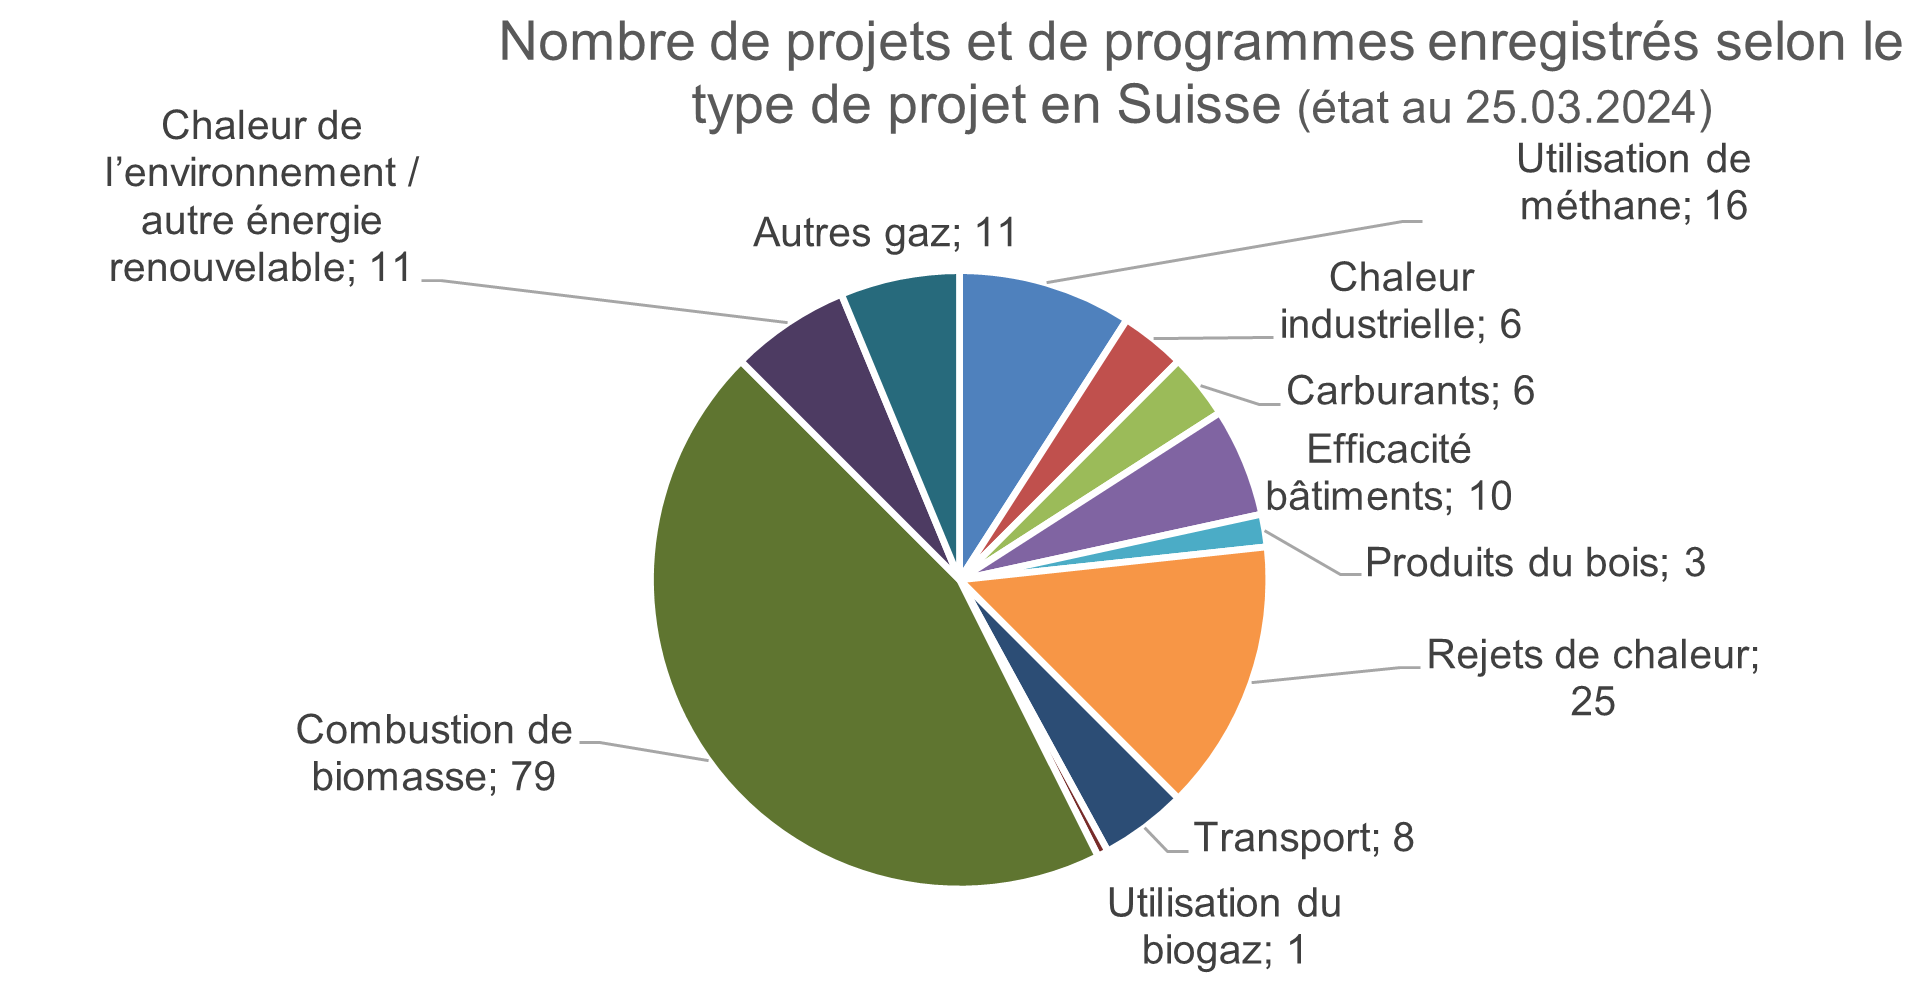 Nombre de projets et de programmes enregistrés selon le type de projet en Suisse (état au 25.03.2024).PNG